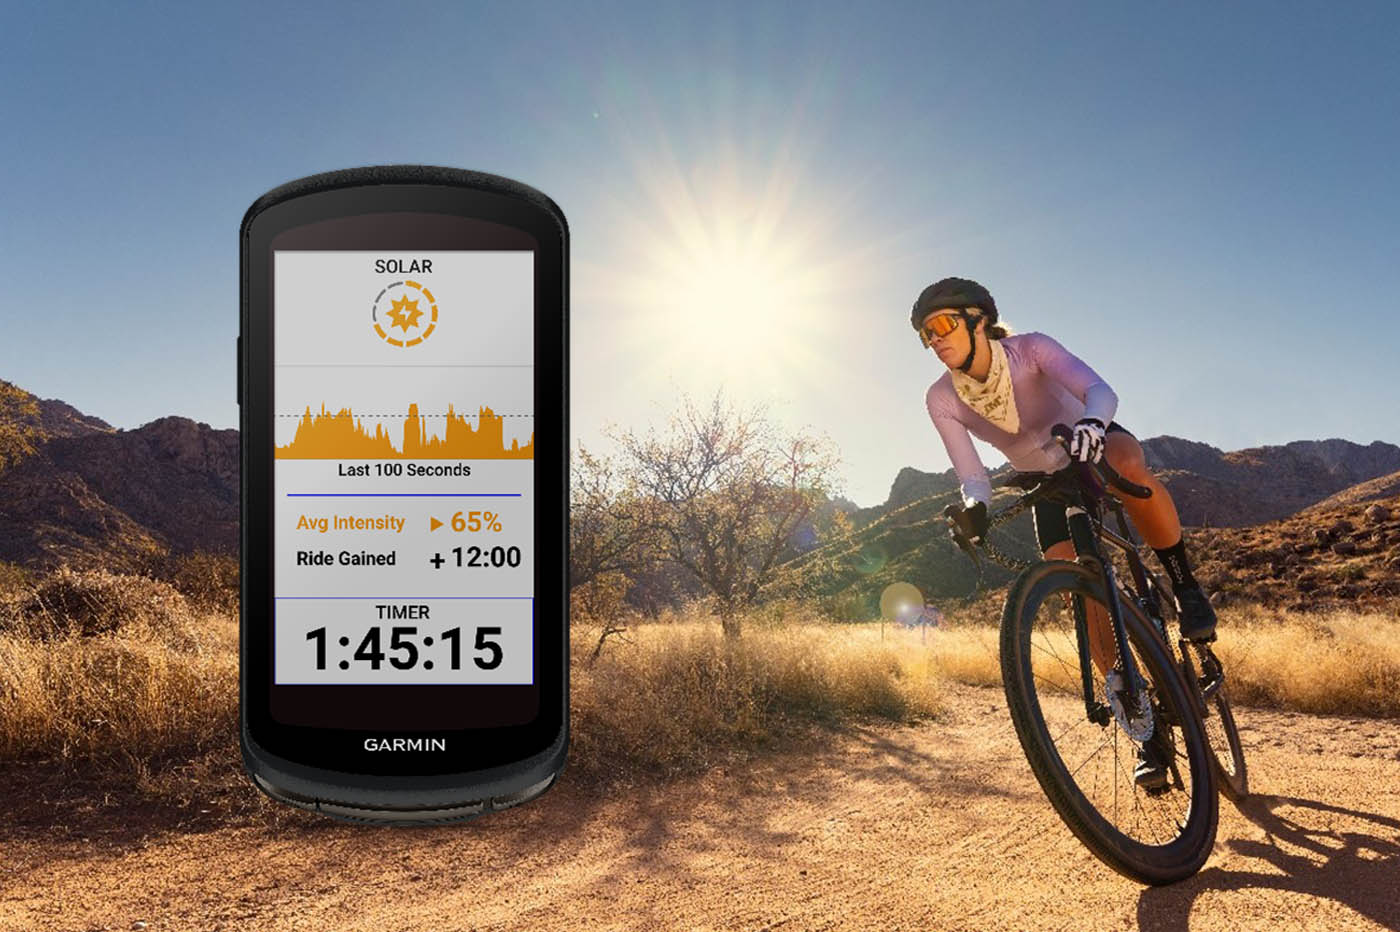 Edge 1040 : Garmin intègre son verre solaire dans son GPS pour cycliste et promet une autonomie de 100 heures